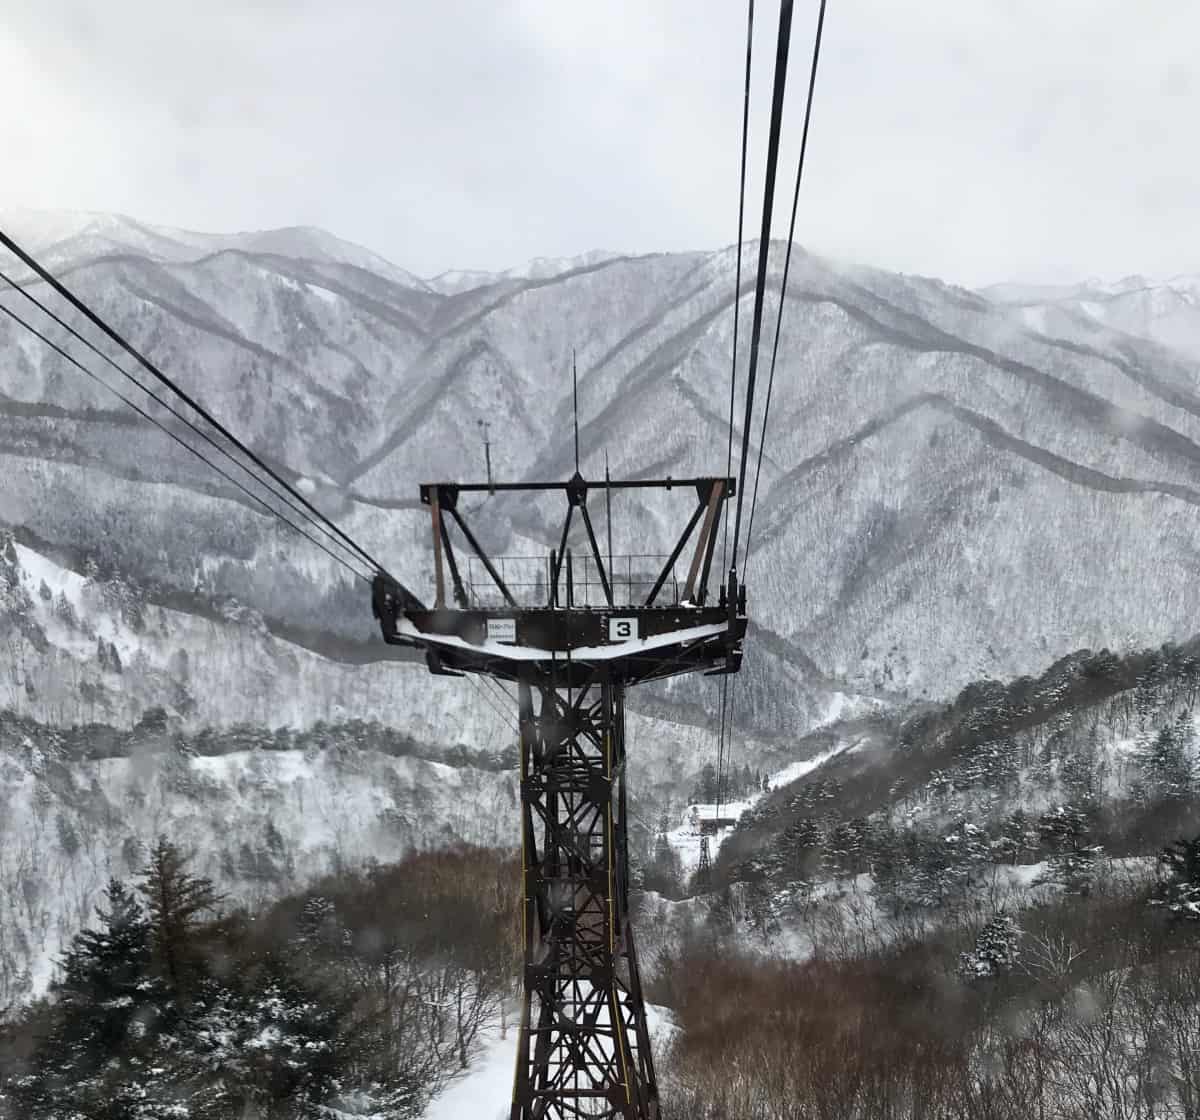 Experience Powder Snow Skiing in Japan at Yonezawa